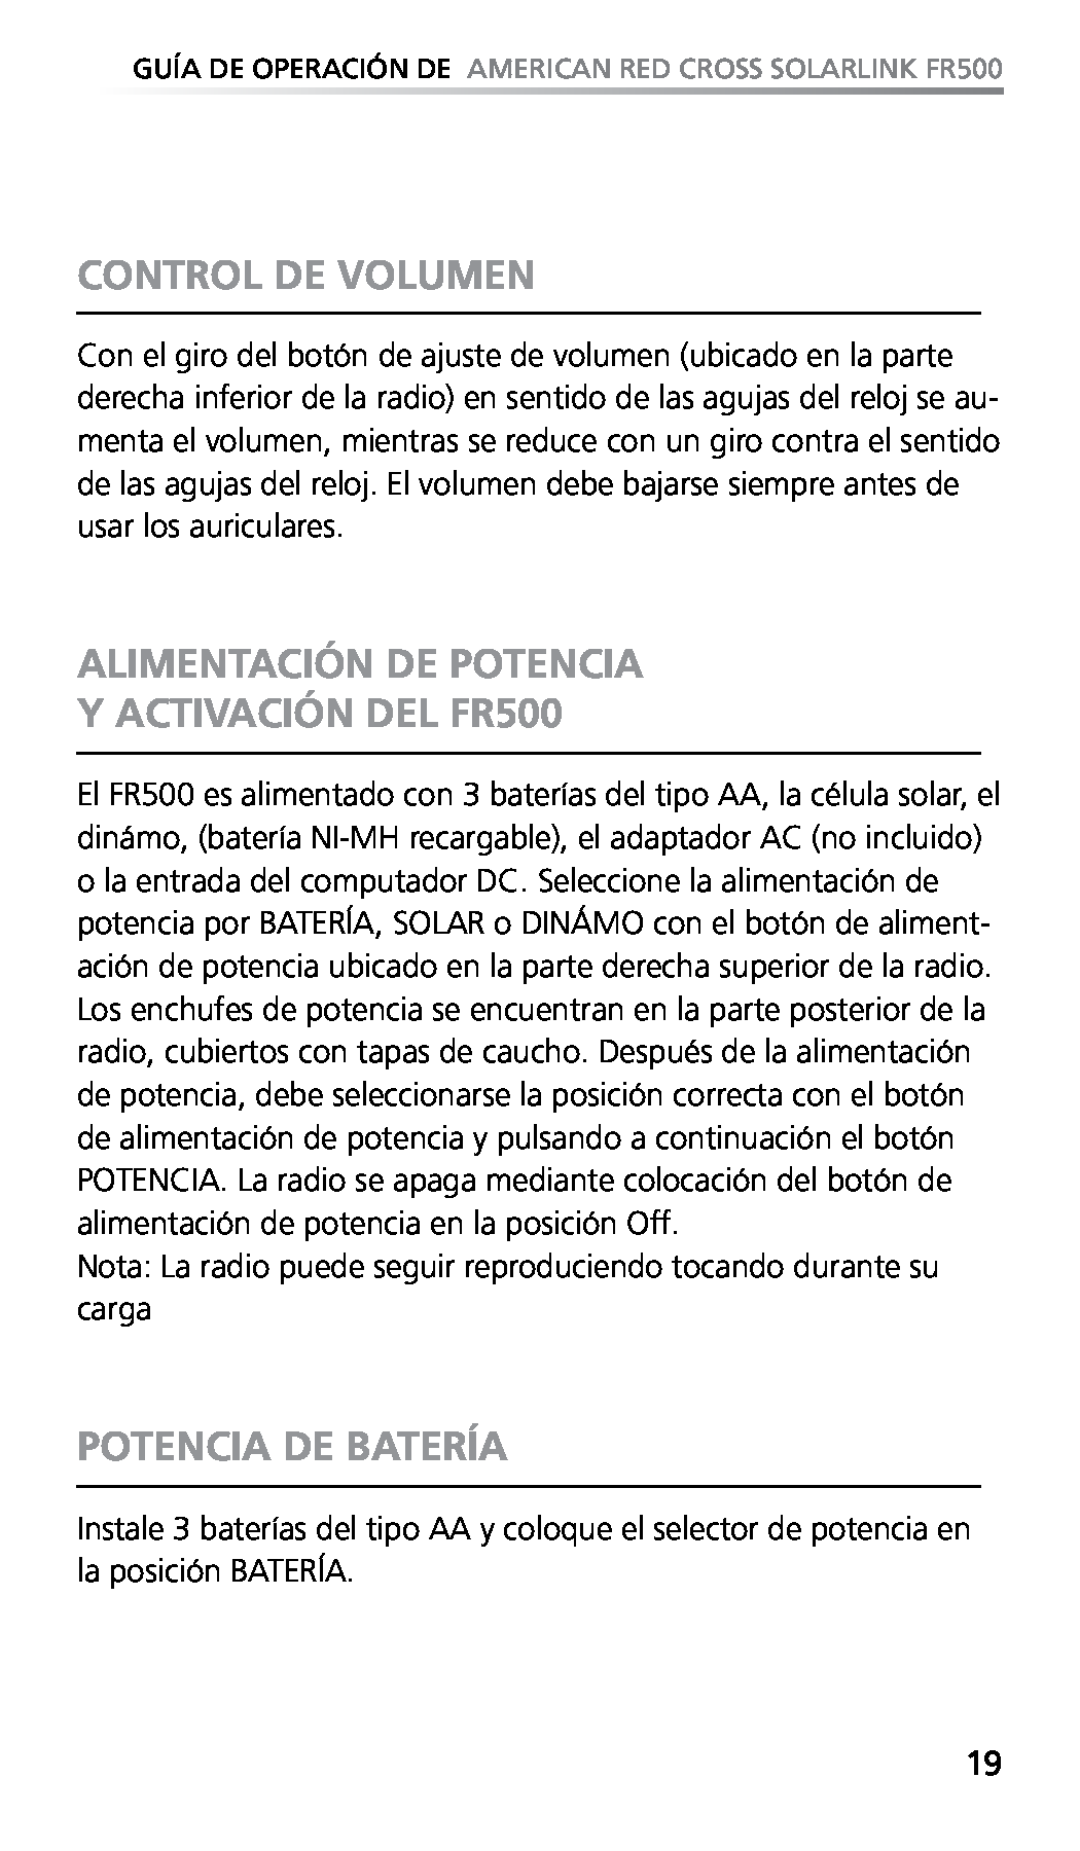 Eton owner manual Control De Volumen, ALIMENTACIÓN DE POTENCIA Y ACTIVACIÓN DEL FR500, Potencia De Batería 